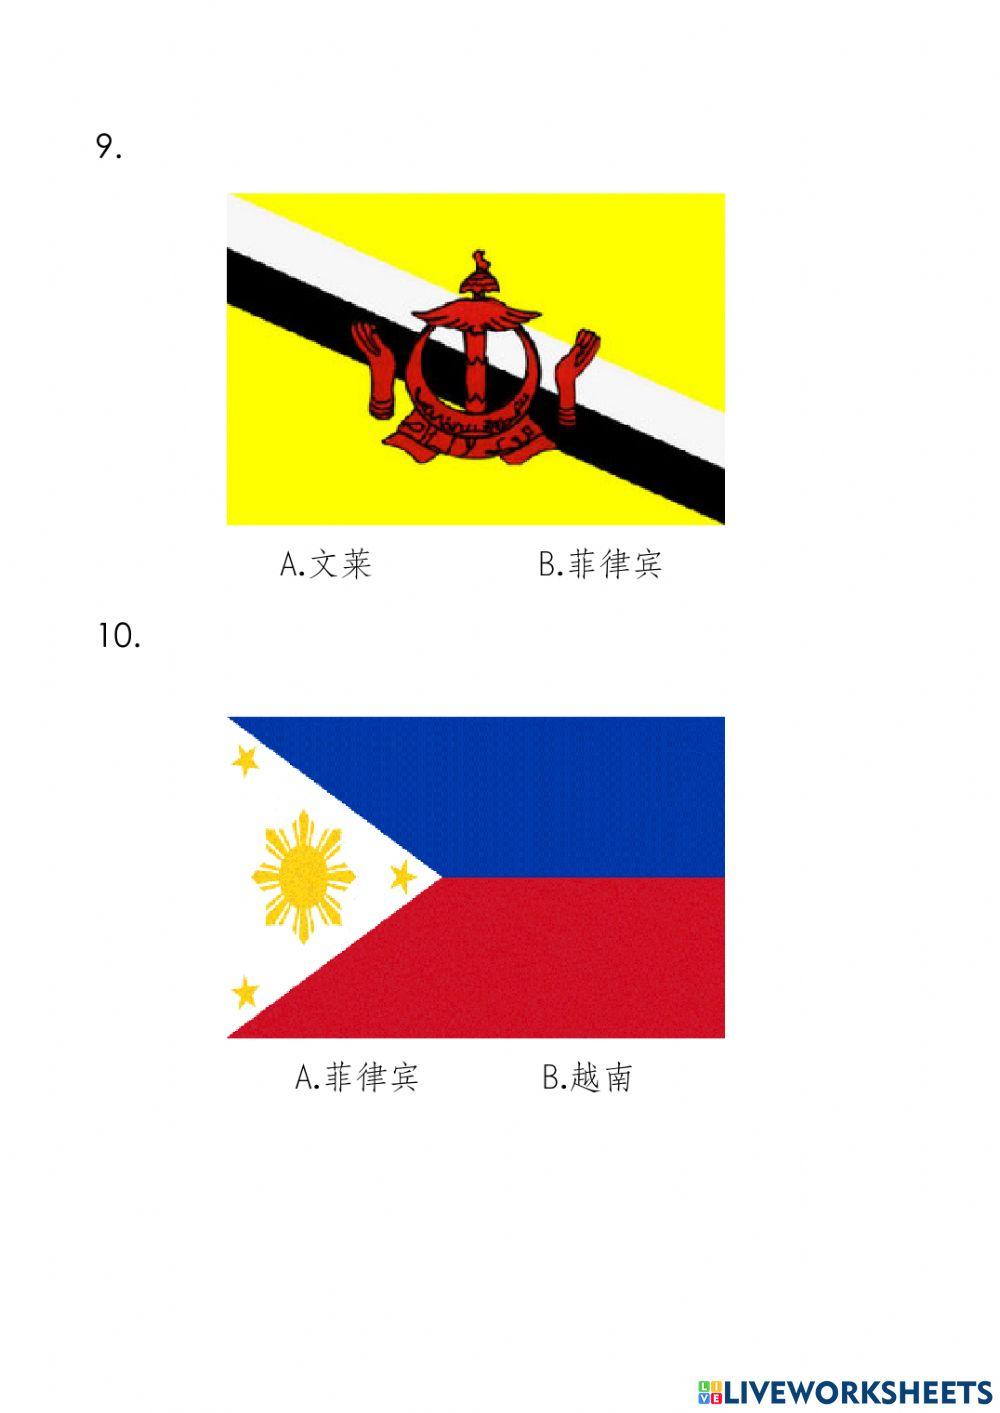 东南亚国家的国旗